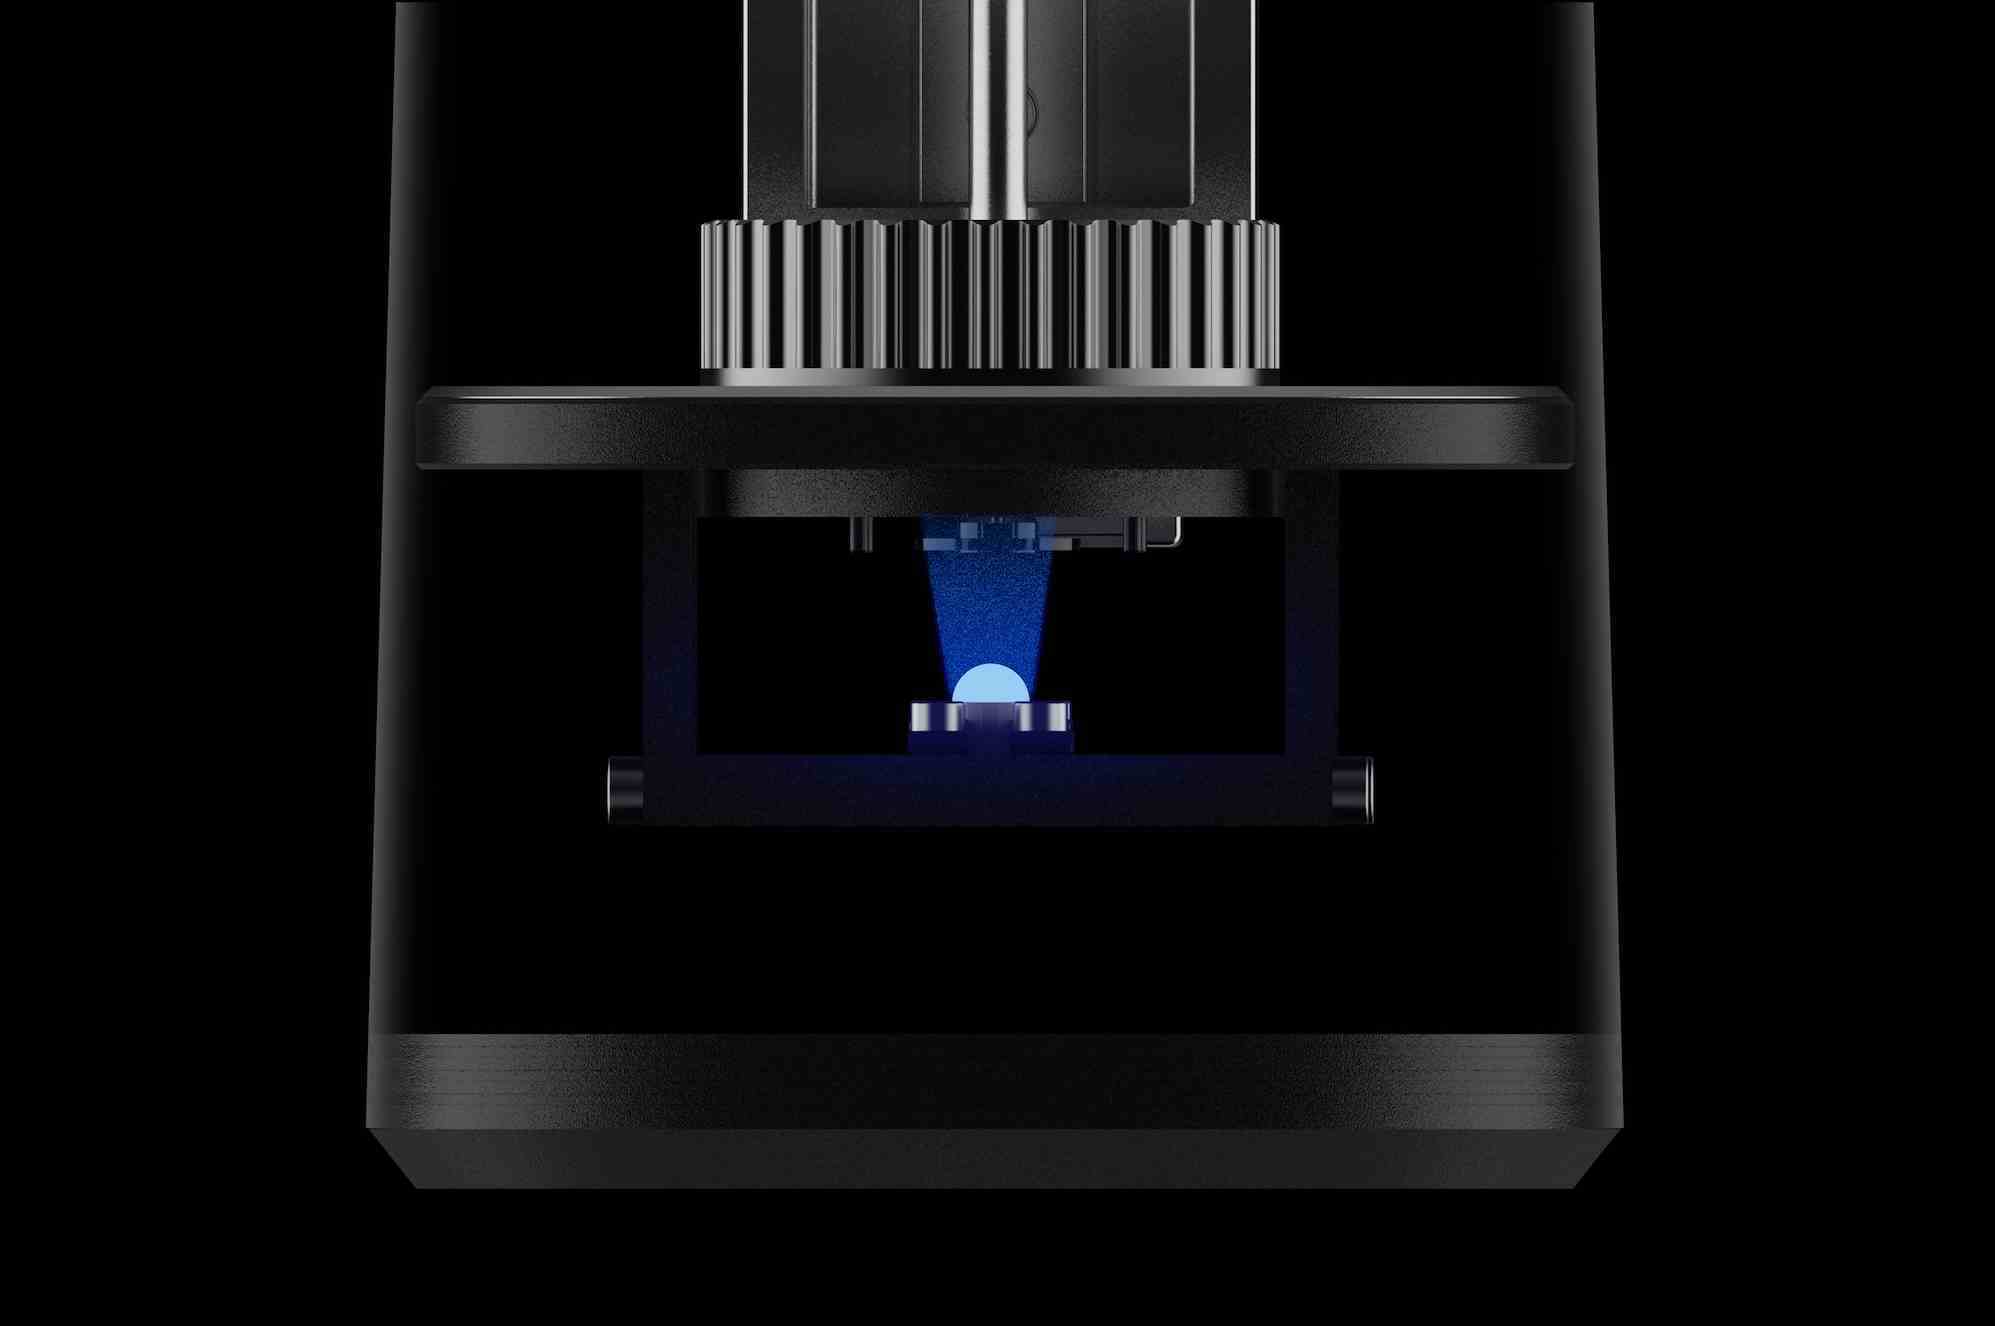 Anycubic'in 3D yazıcılarından birinin siyah ve koyu bir arka plan üzerinde çekilmiş fotoğrafı